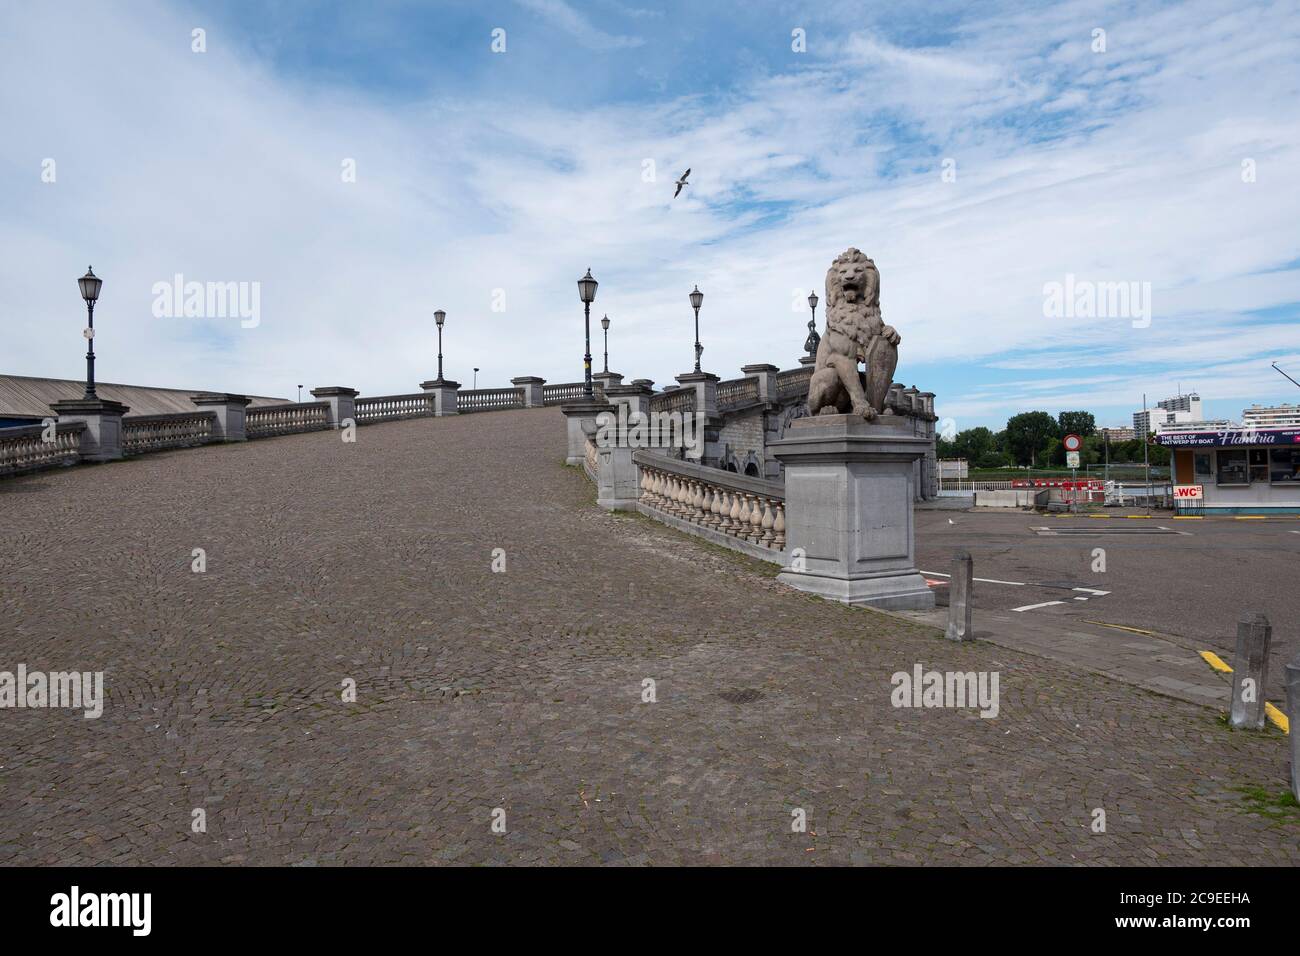 Anvers, Belgique, 19 juillet 2020, la place en pierre sans les touristes complètement vide Banque D'Images